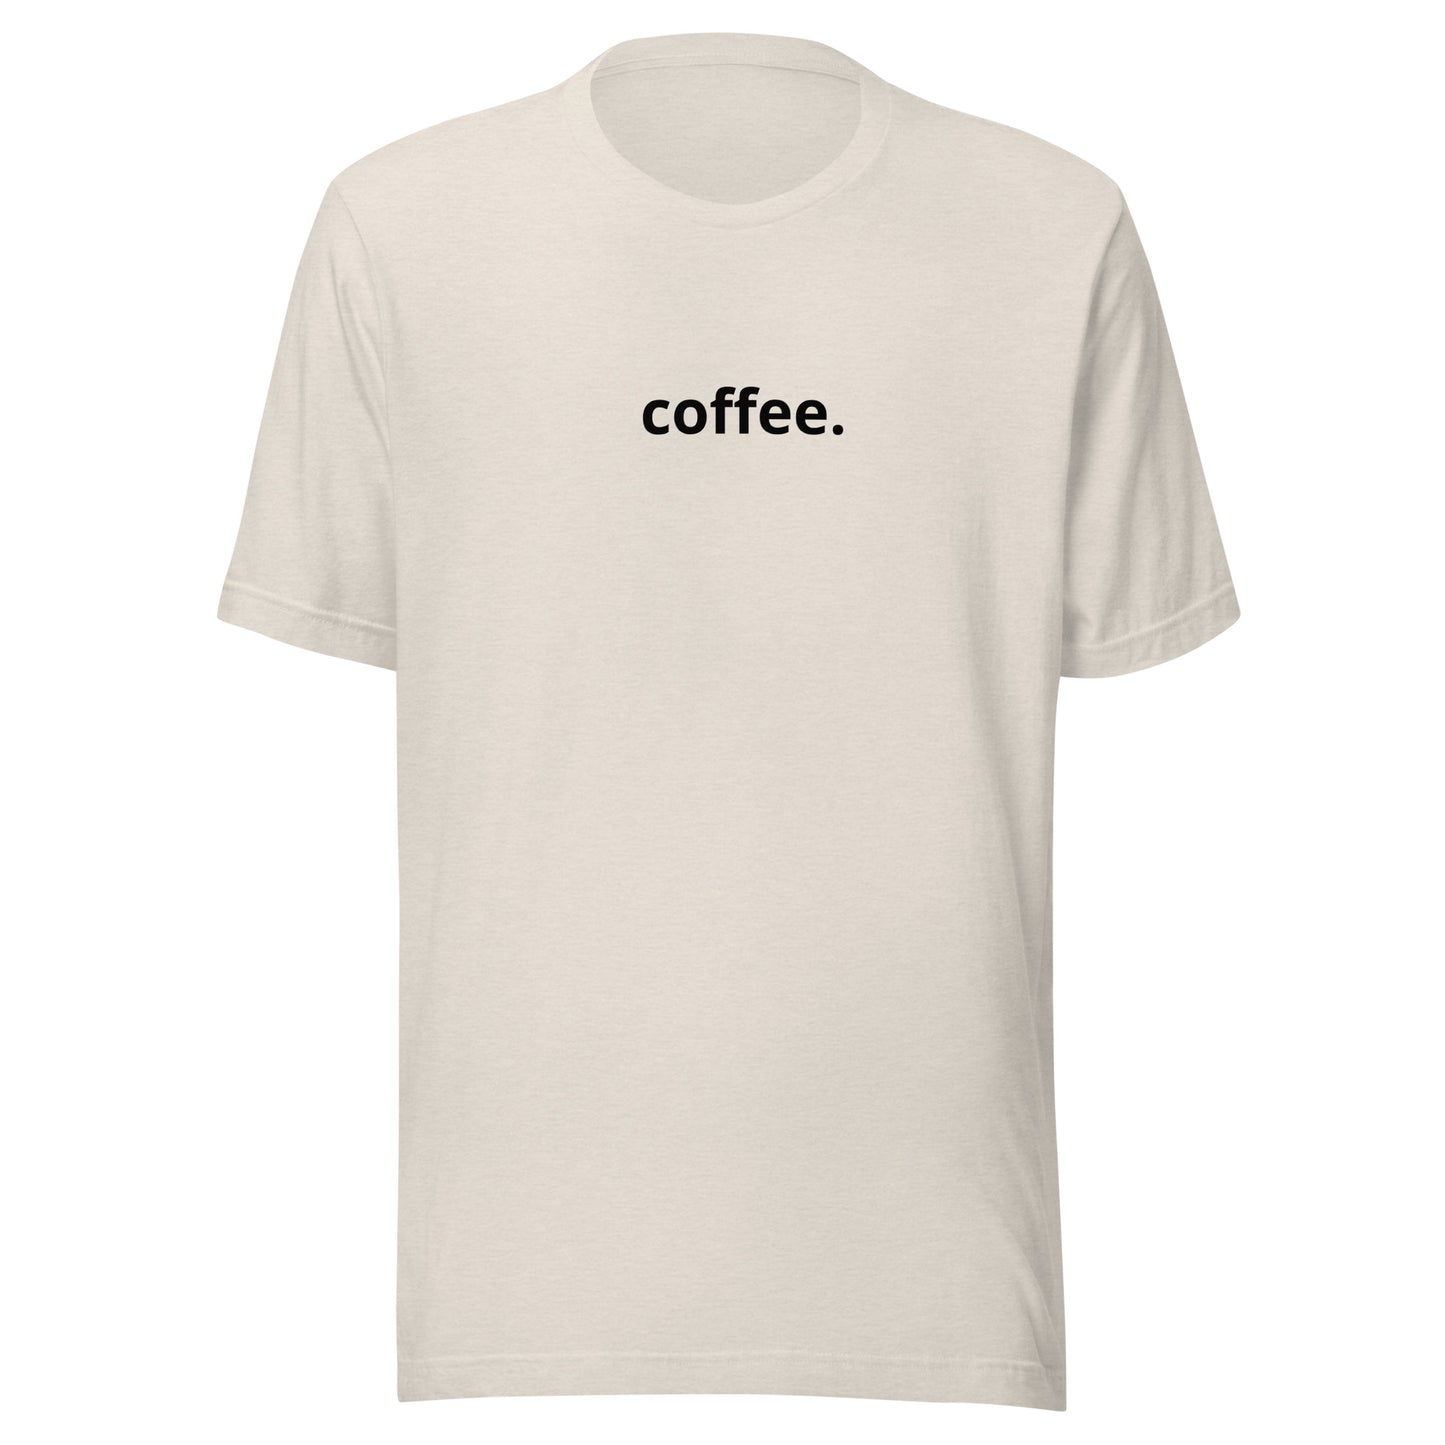 Coffee. Minimalist T-Shirt